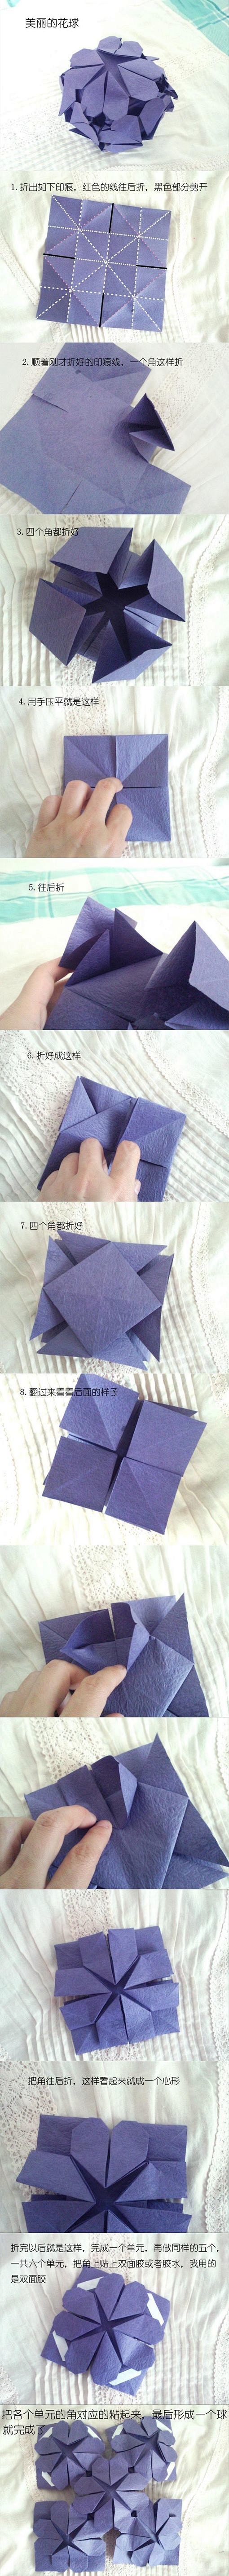 创意手工  折纸